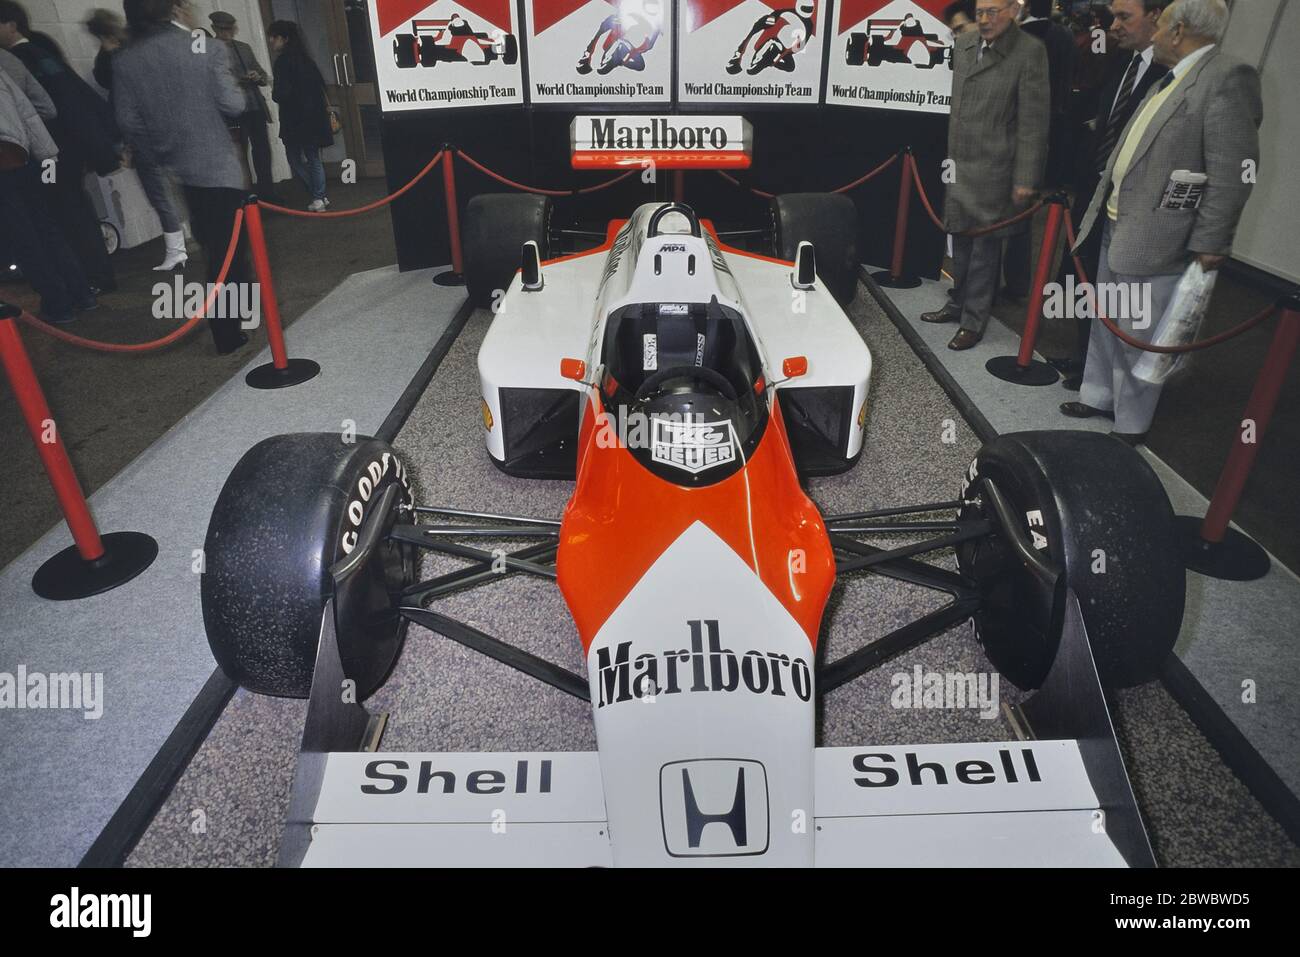 El McLaren MP4/3 o MP4/3B Fórmula uno coche de carreras construido y dirigido por McLaren International durante el Campeonato Mundial de Fórmula uno 1987 en la exposición DE COCHES DE CARRERAS 1989. Olympia 2, Londres, Inglaterra, Reino Unido, GB. 4 al 8 de enero de 1989 Foto de stock